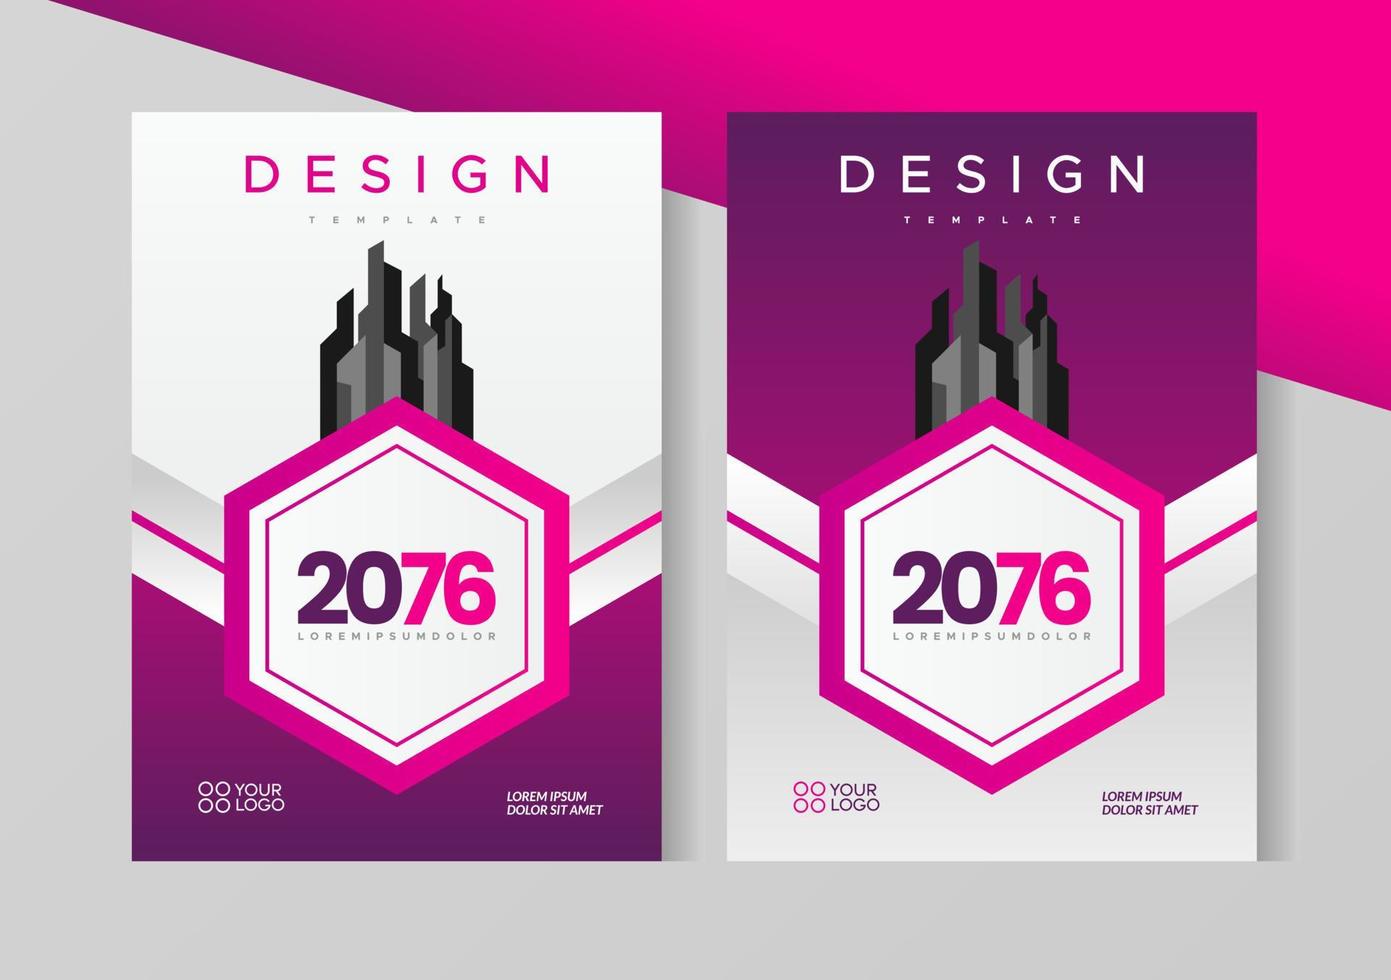 Diseño de folleto de volante, plantilla de tamaño a4 de portada empresarial, hexágono geométrico de color púrpura y rosa vector